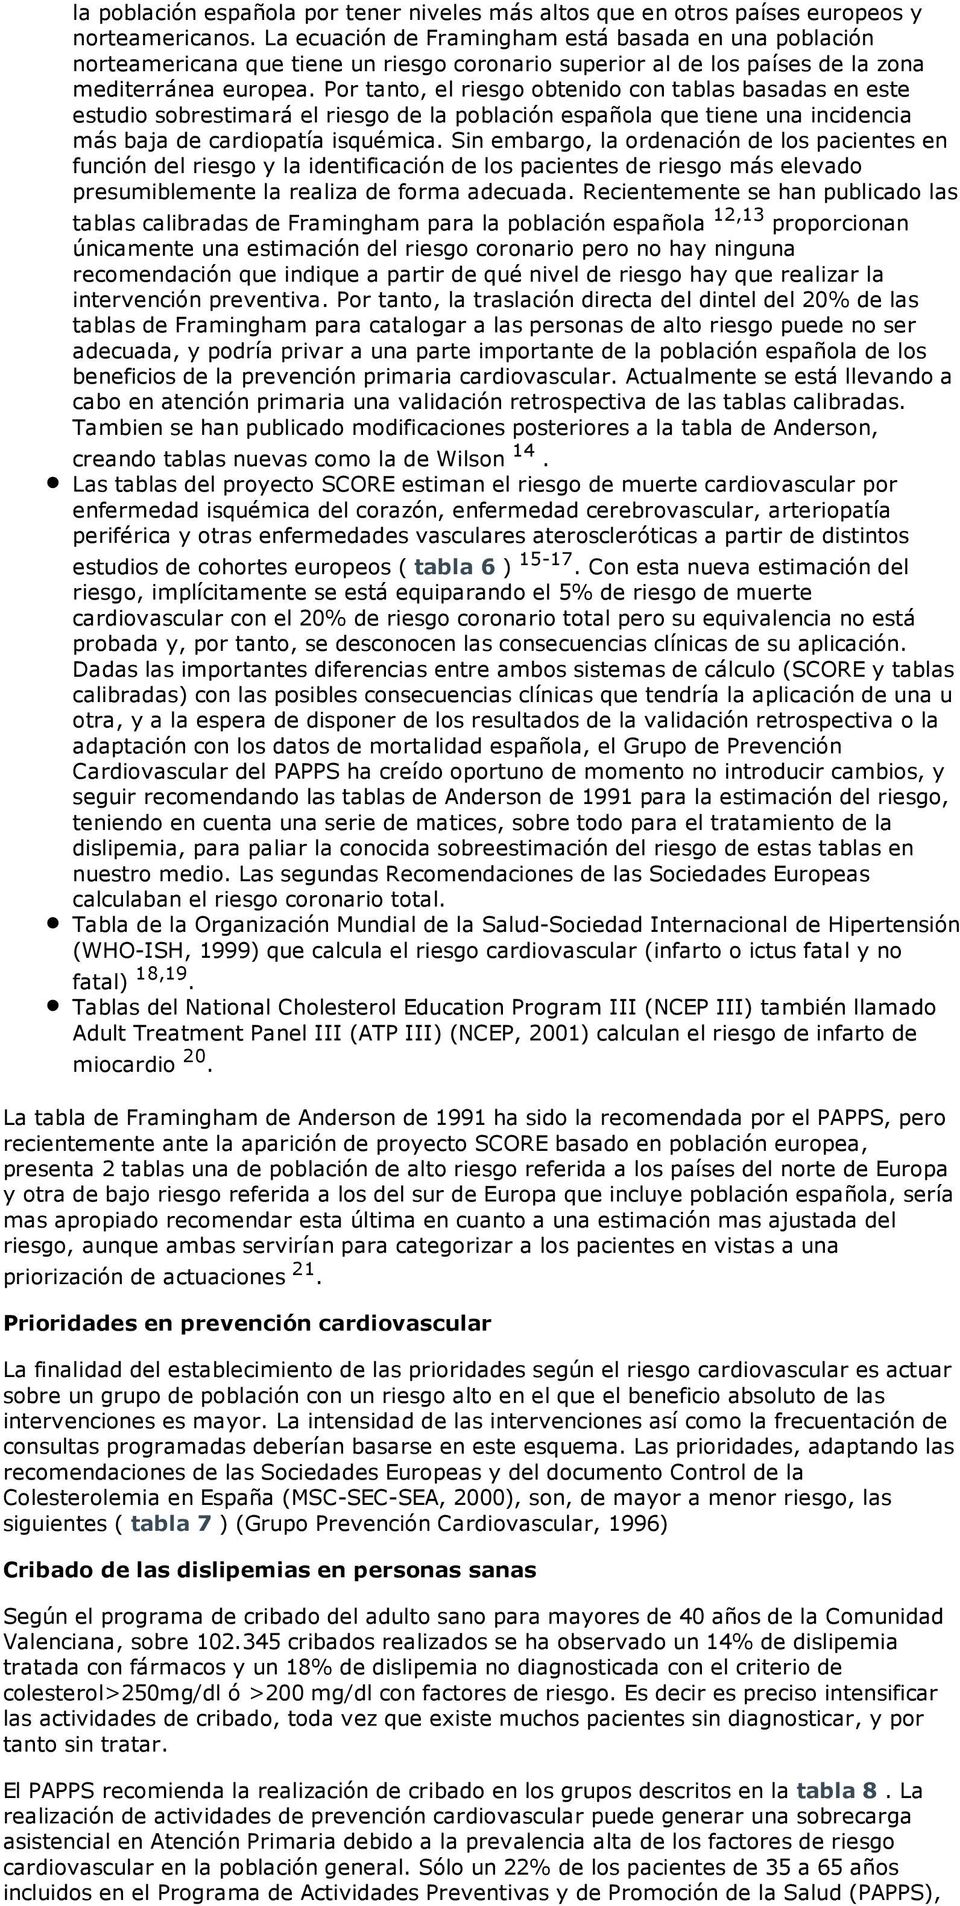 Por tanto, el riesgo obtenido con tablas basadas en este estudio sobrestimará el riesgo de la población española que tiene una incidencia más baja de cardiopatía isquémica.